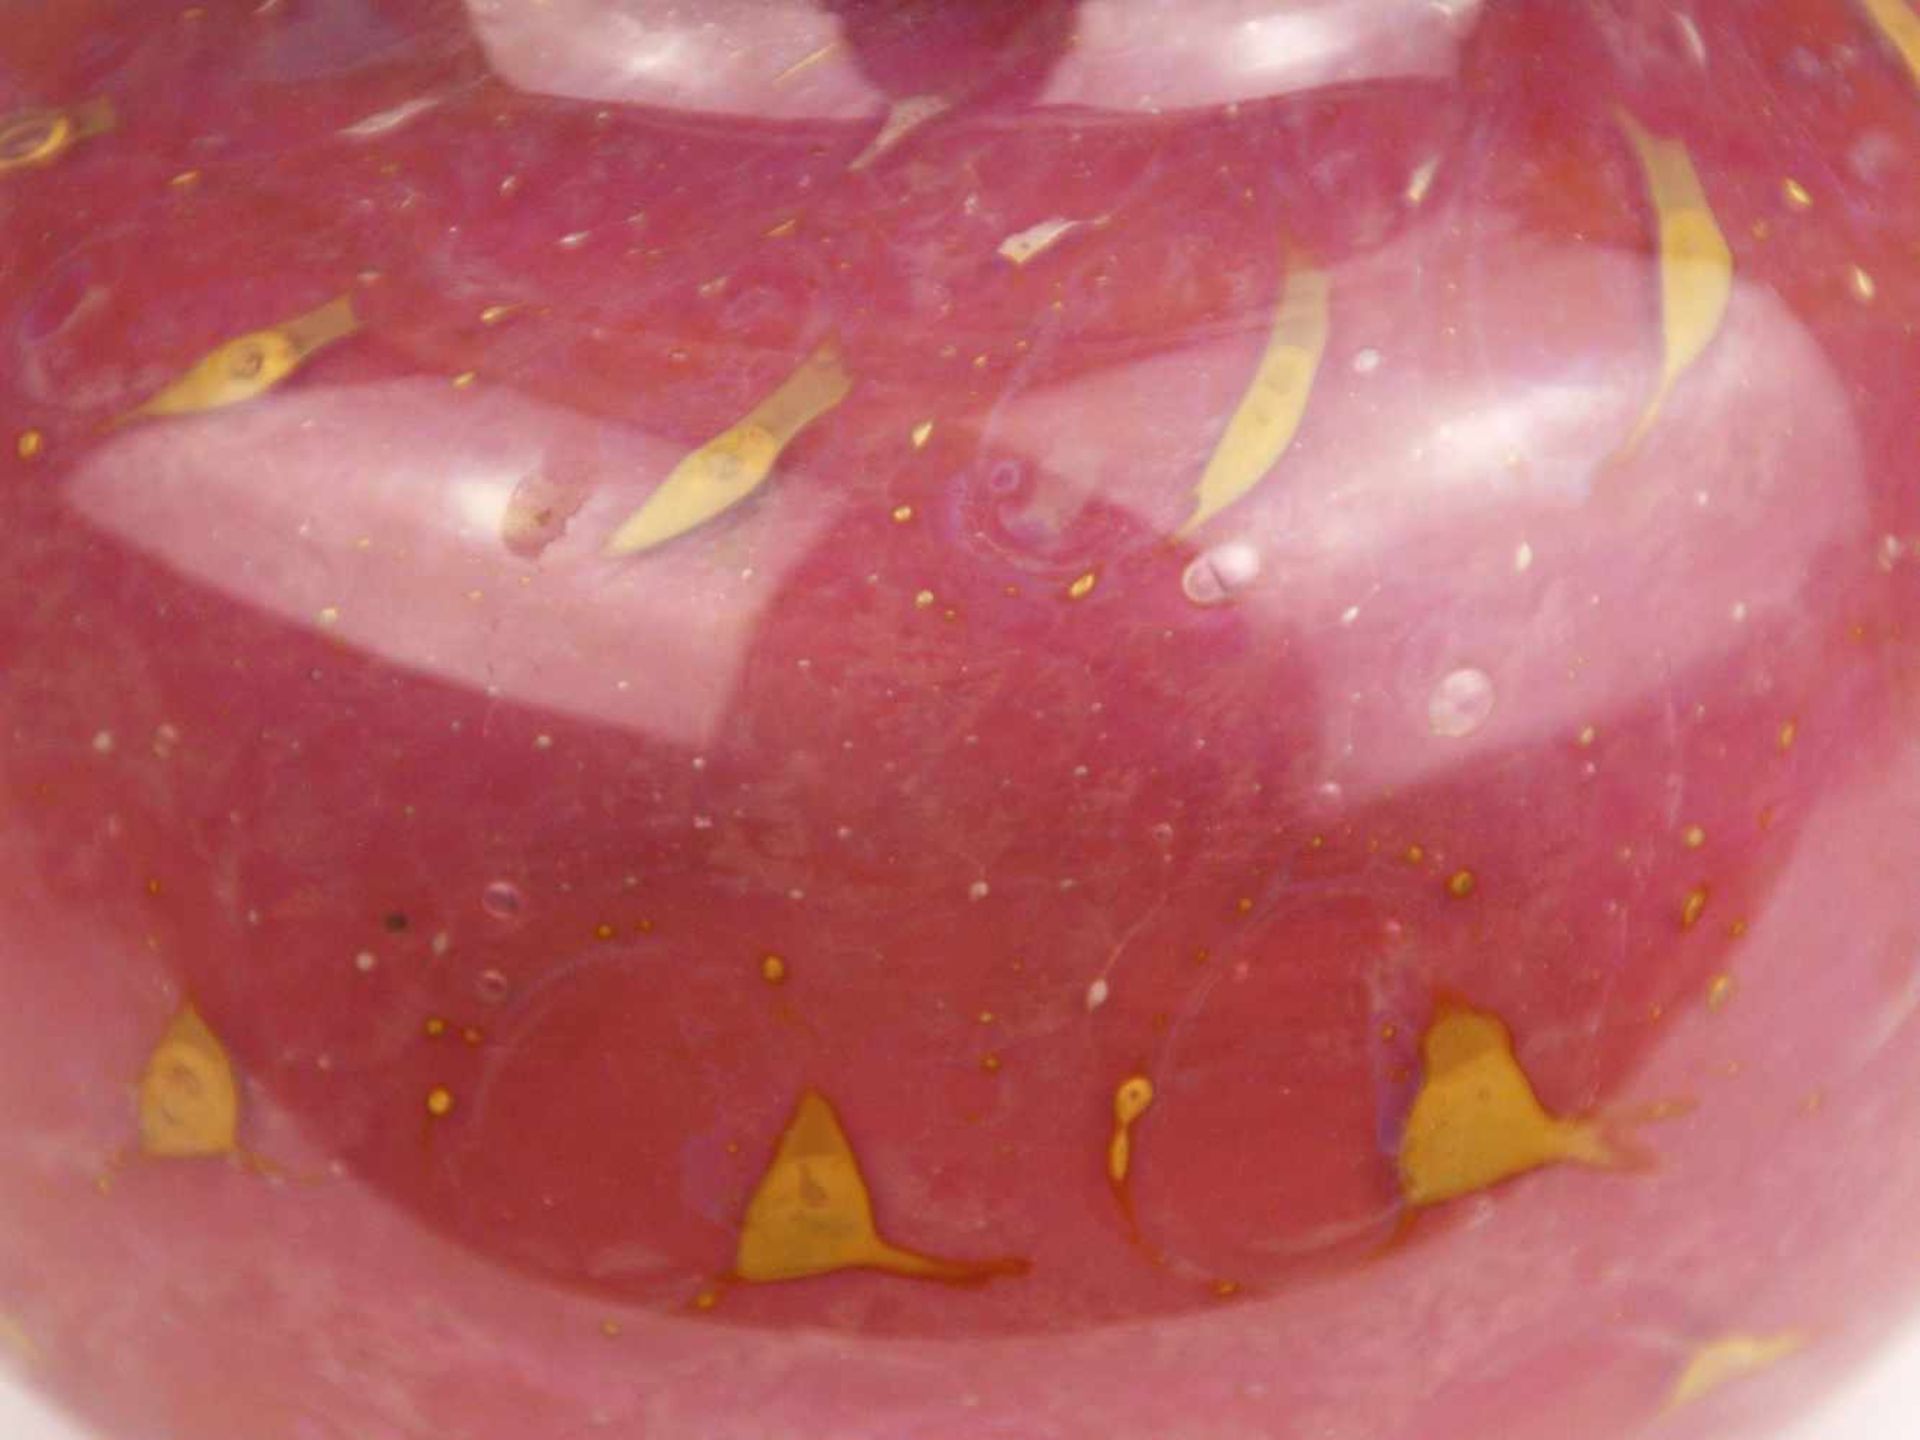 Vase - Klarglas, rosa unterfangen, eingeschmolzene goldfarbene Luftblasen, gedrückte Kugelform, - Bild 4 aus 5